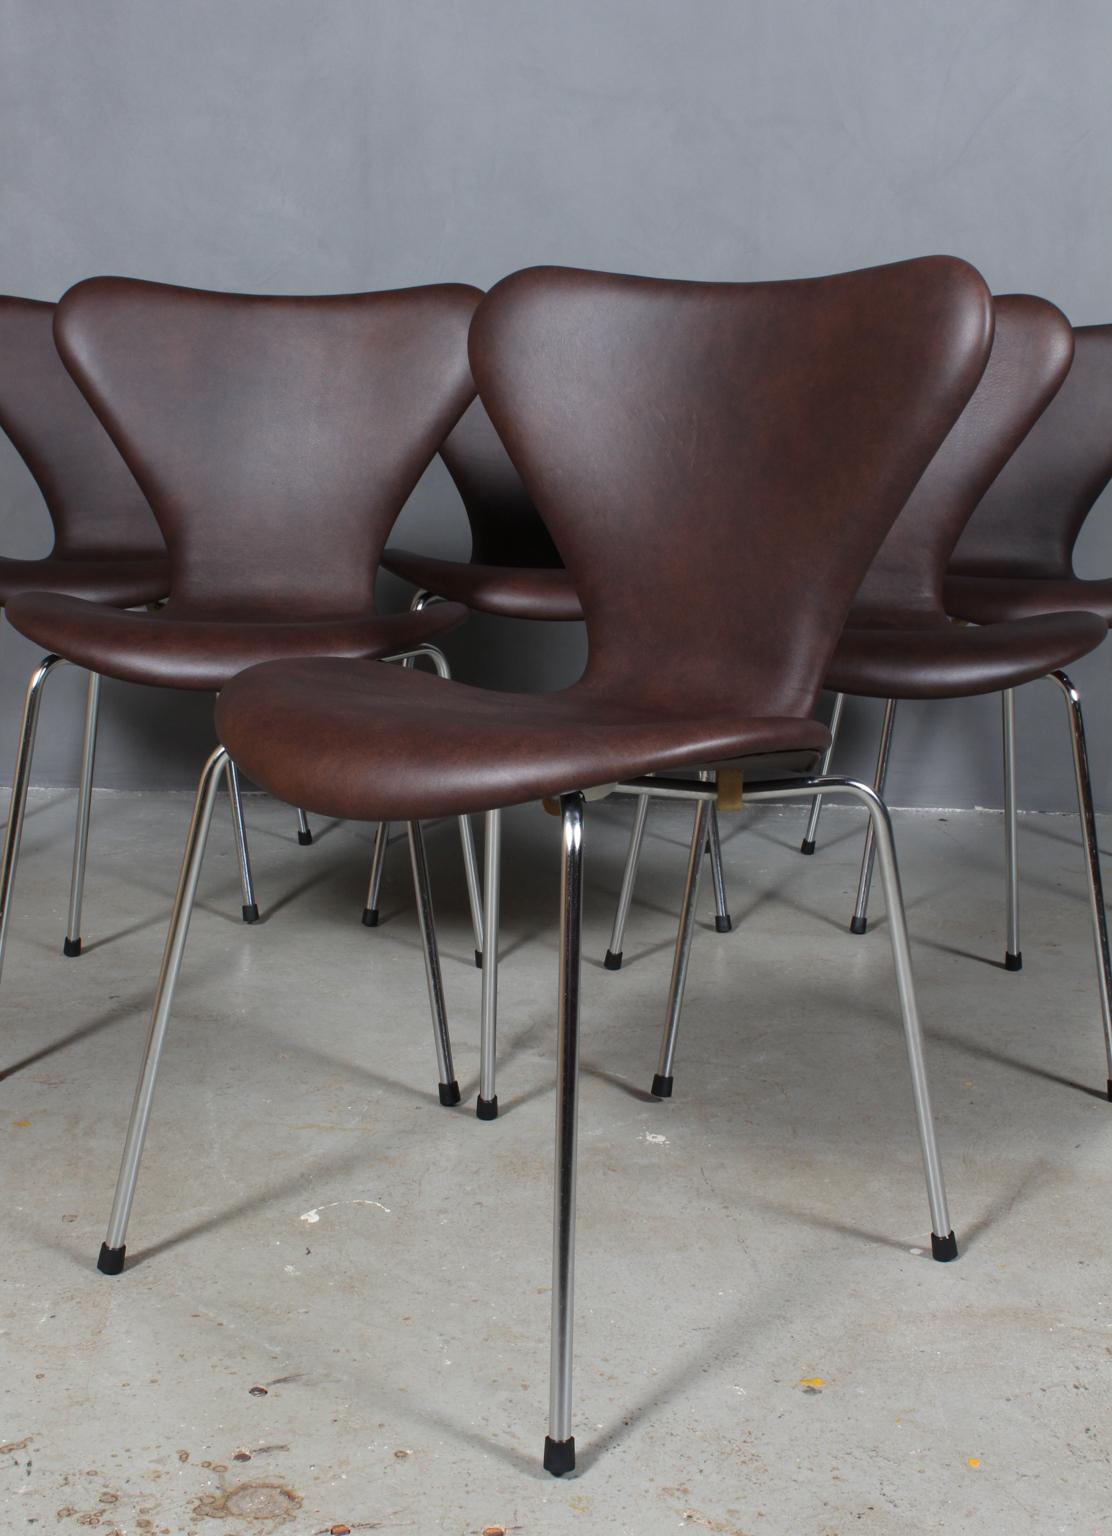 Arne Jacobsen dining chair new upholstered with Mokka aniline leather.

Base of chrome steel tube.

Model 3107 Syveren, made by Fritz Hansen.